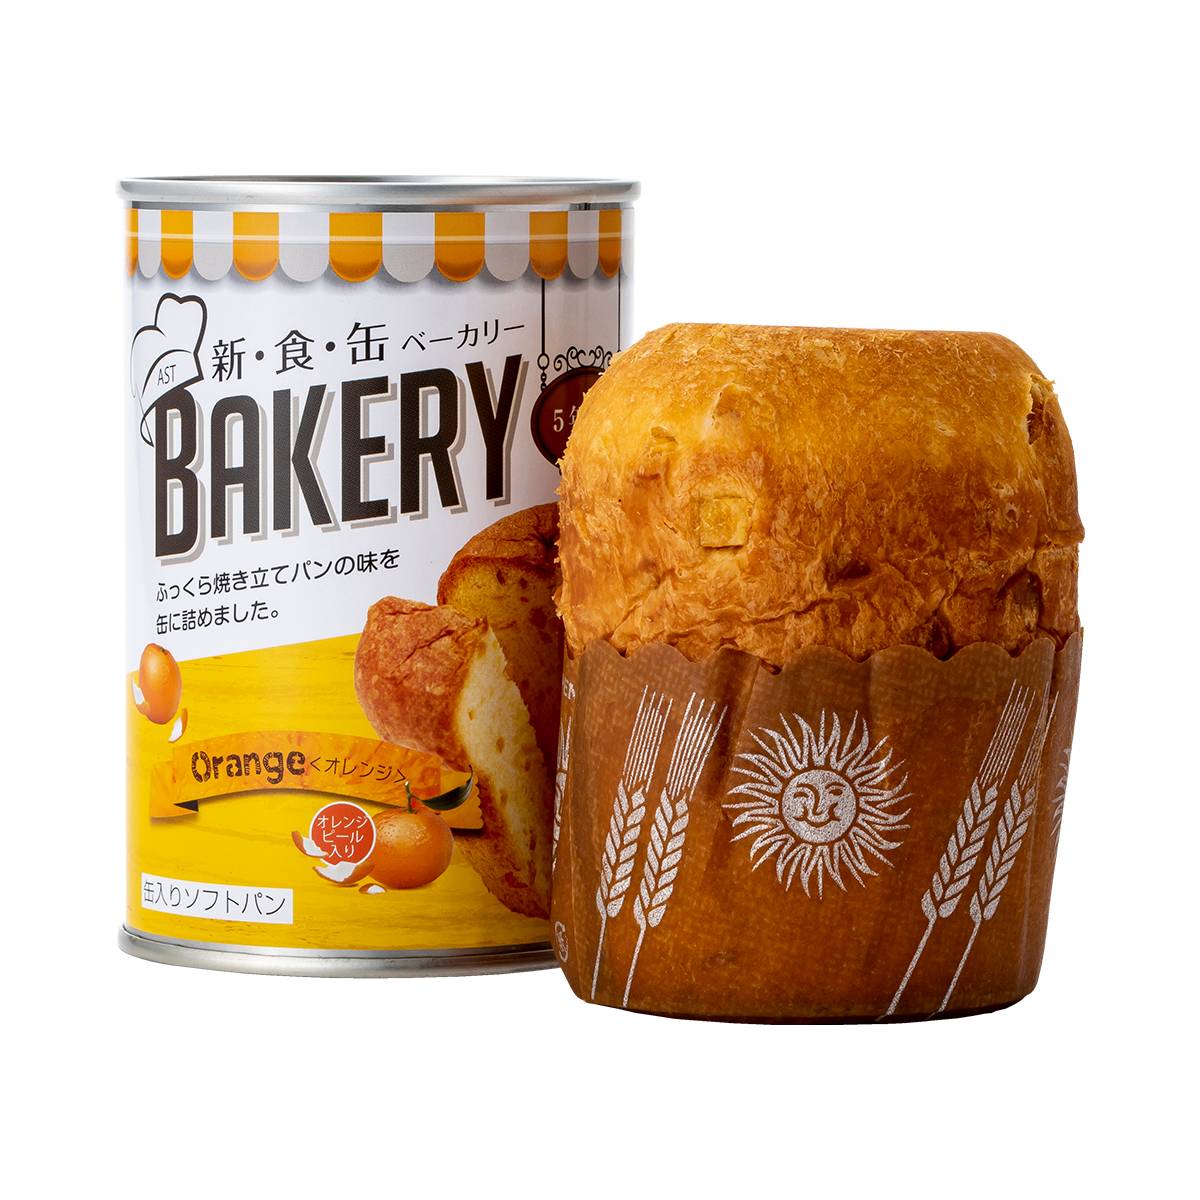 新食缶ベーカリー オレンジ アスト パン 非常食 保存食